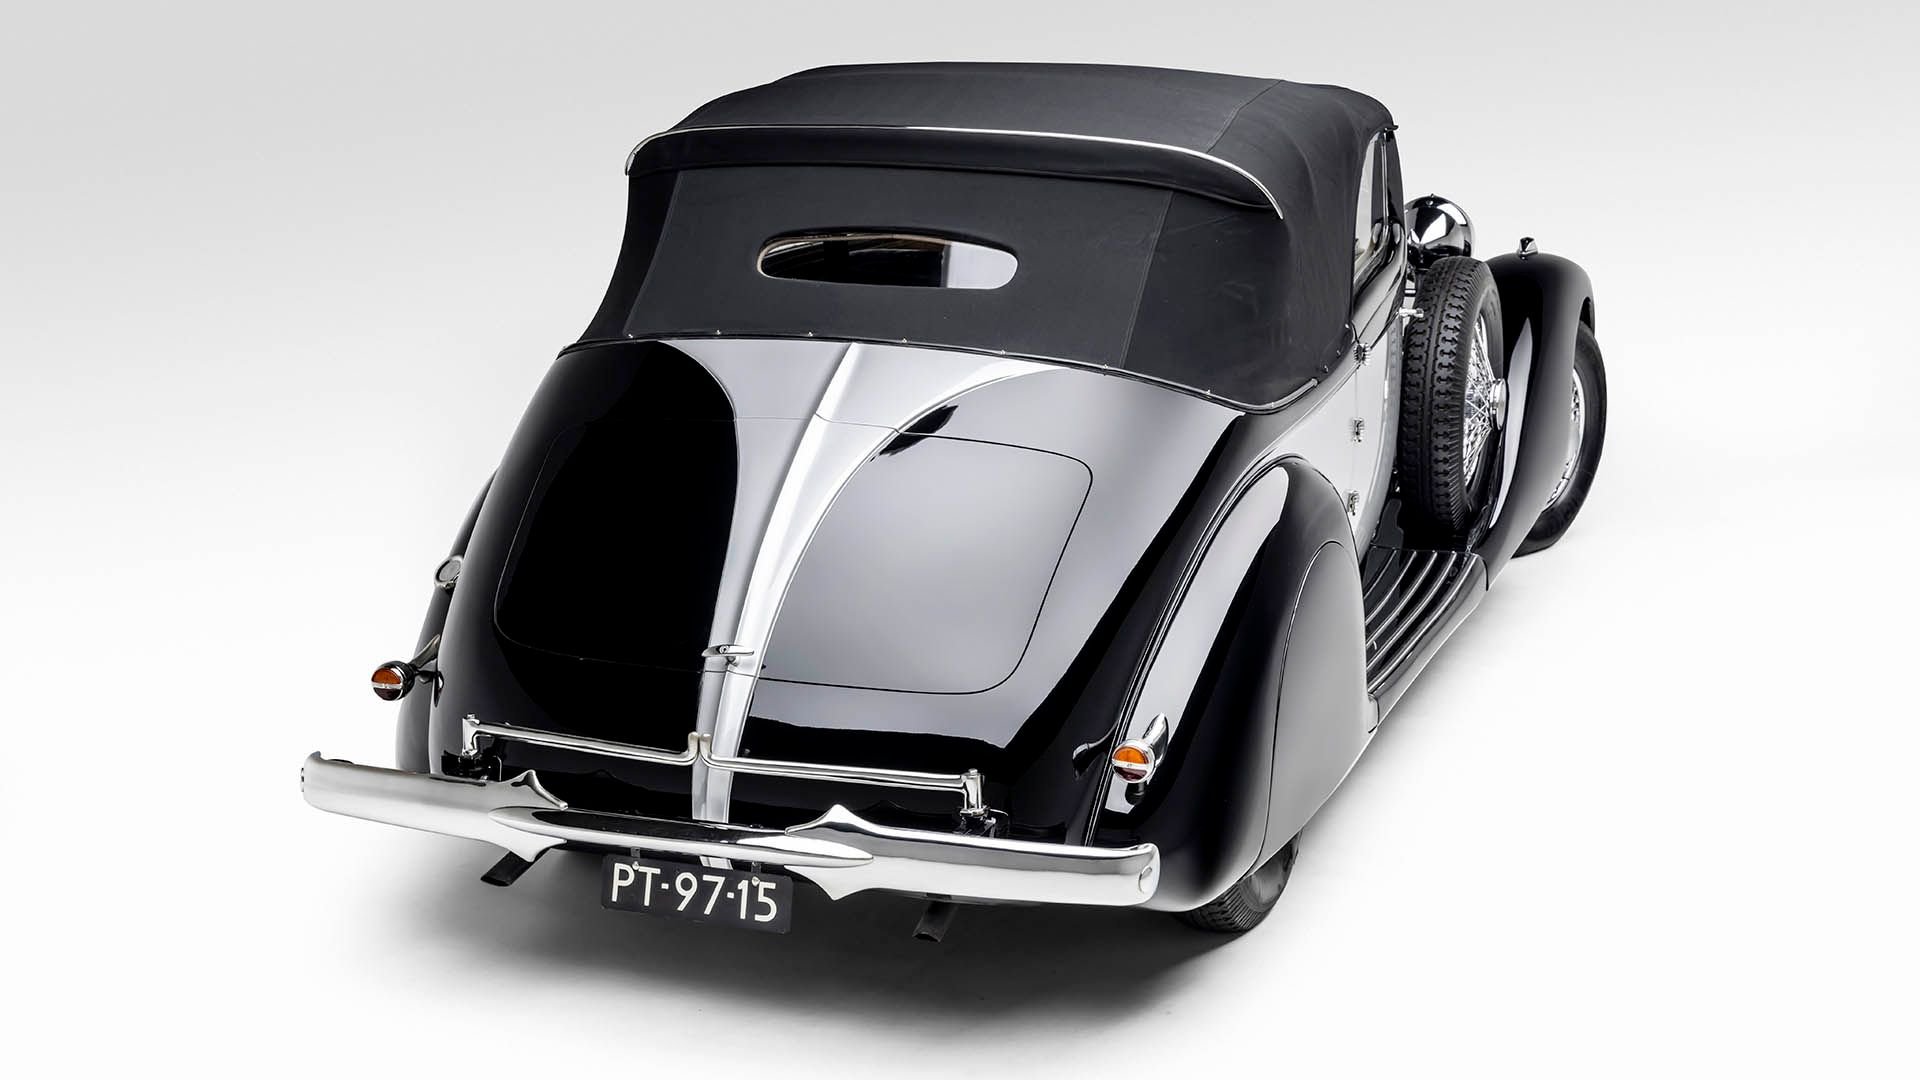 For Sale 1936 Hispano-Suiza J12 d'Ieteren Frères Cabriolet